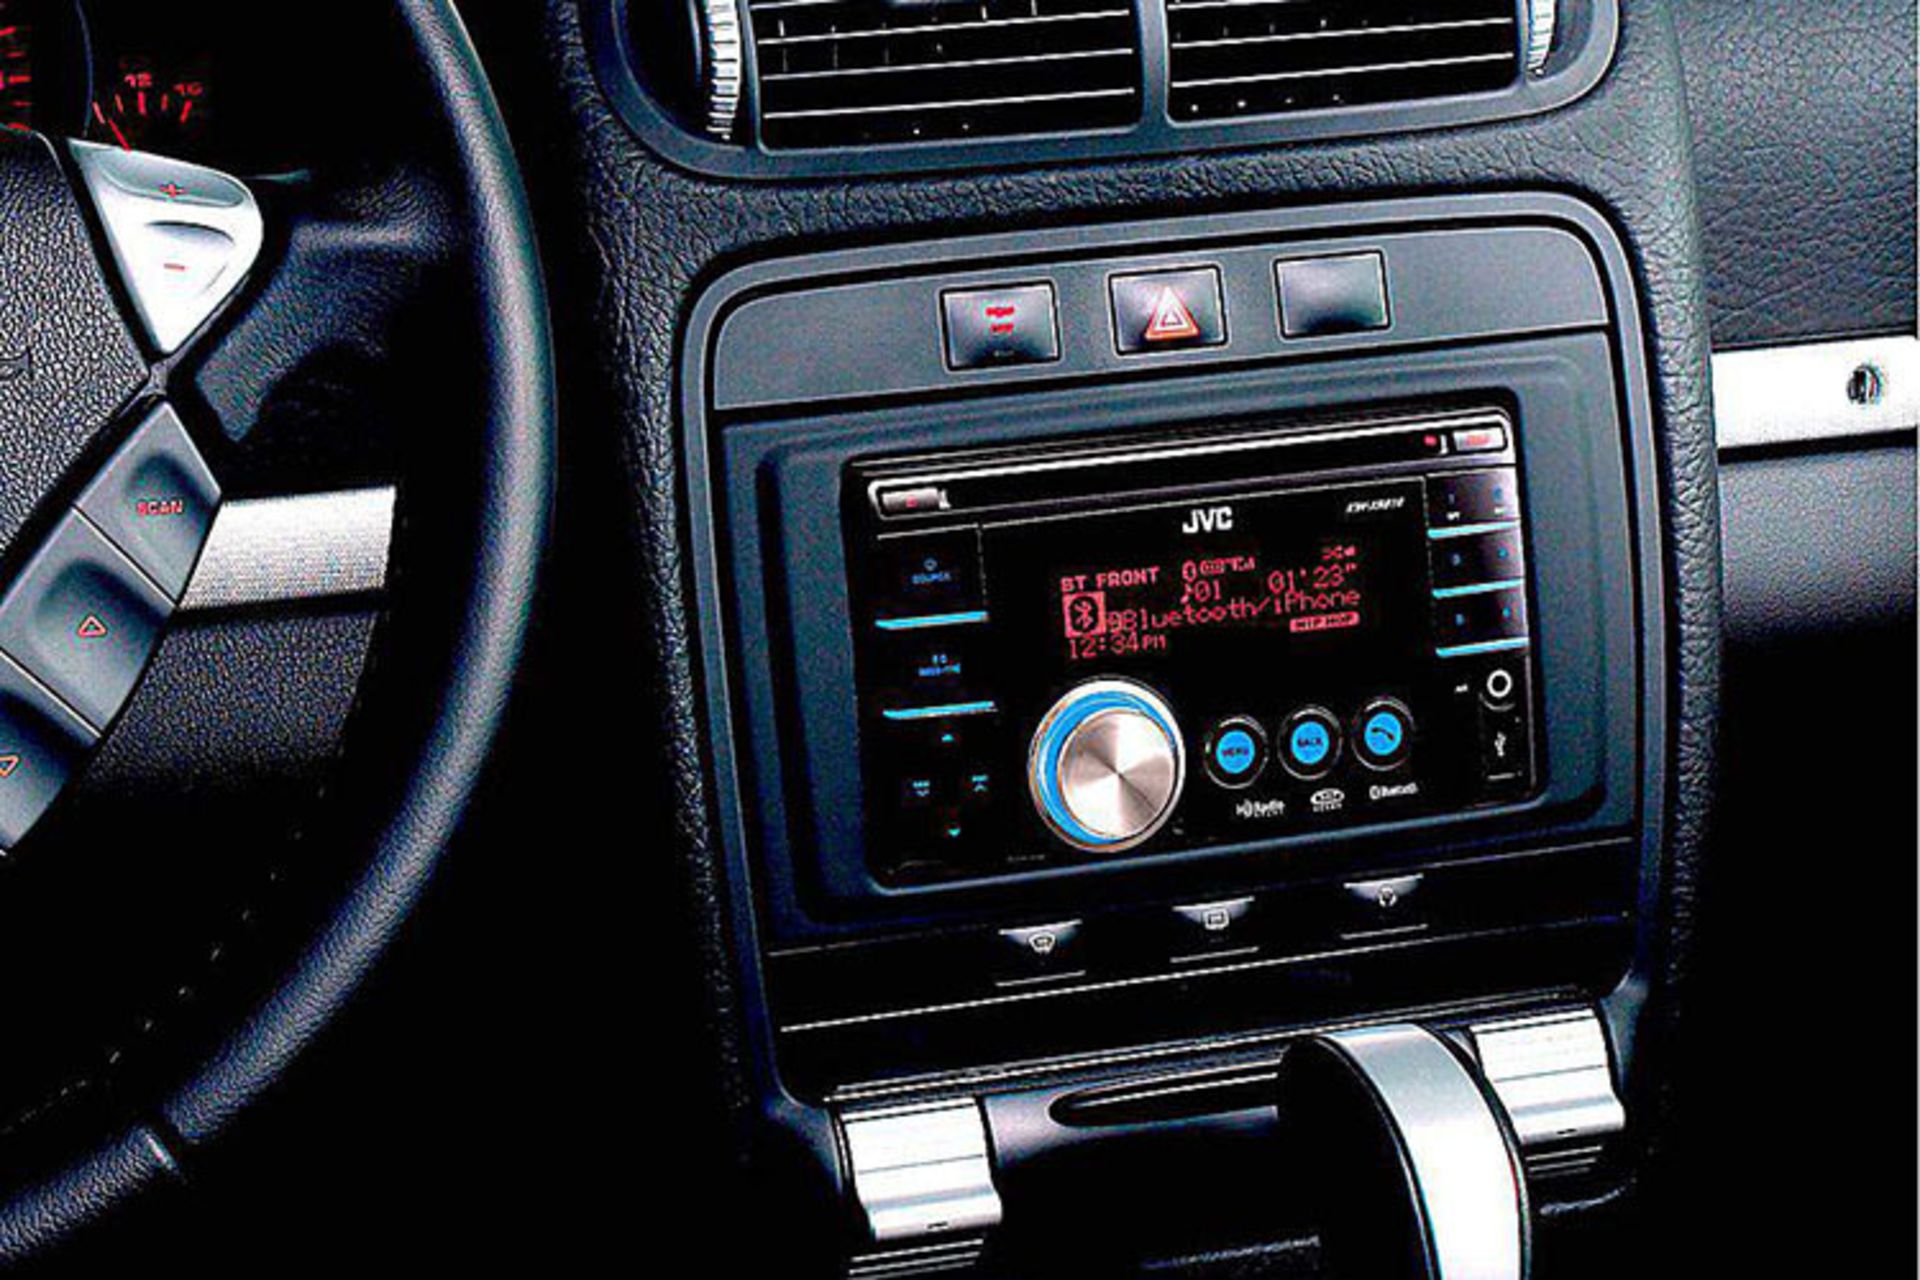 مرجع متخصصين ايران car audio system / سيستم صوتي خودرو